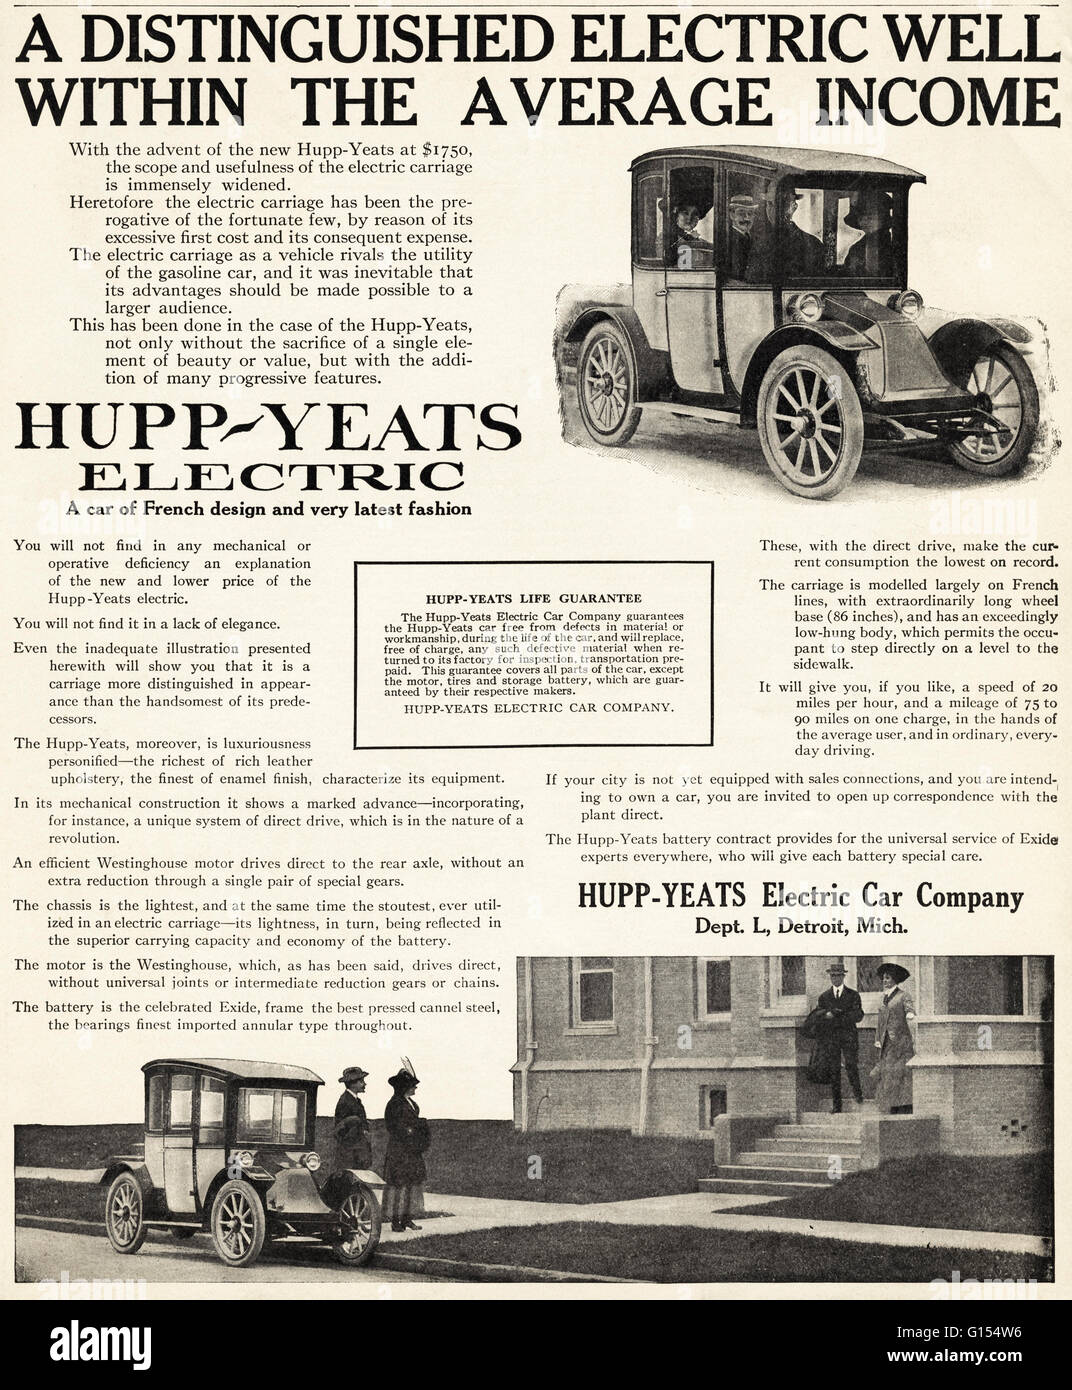 Original antiguo vintage revista americana anuncio desde la época eduardiana, data de 1910. Publicidad publicidad coche eléctrico Hupp-Yeats Company de Detroit, Michigan USA Foto de stock